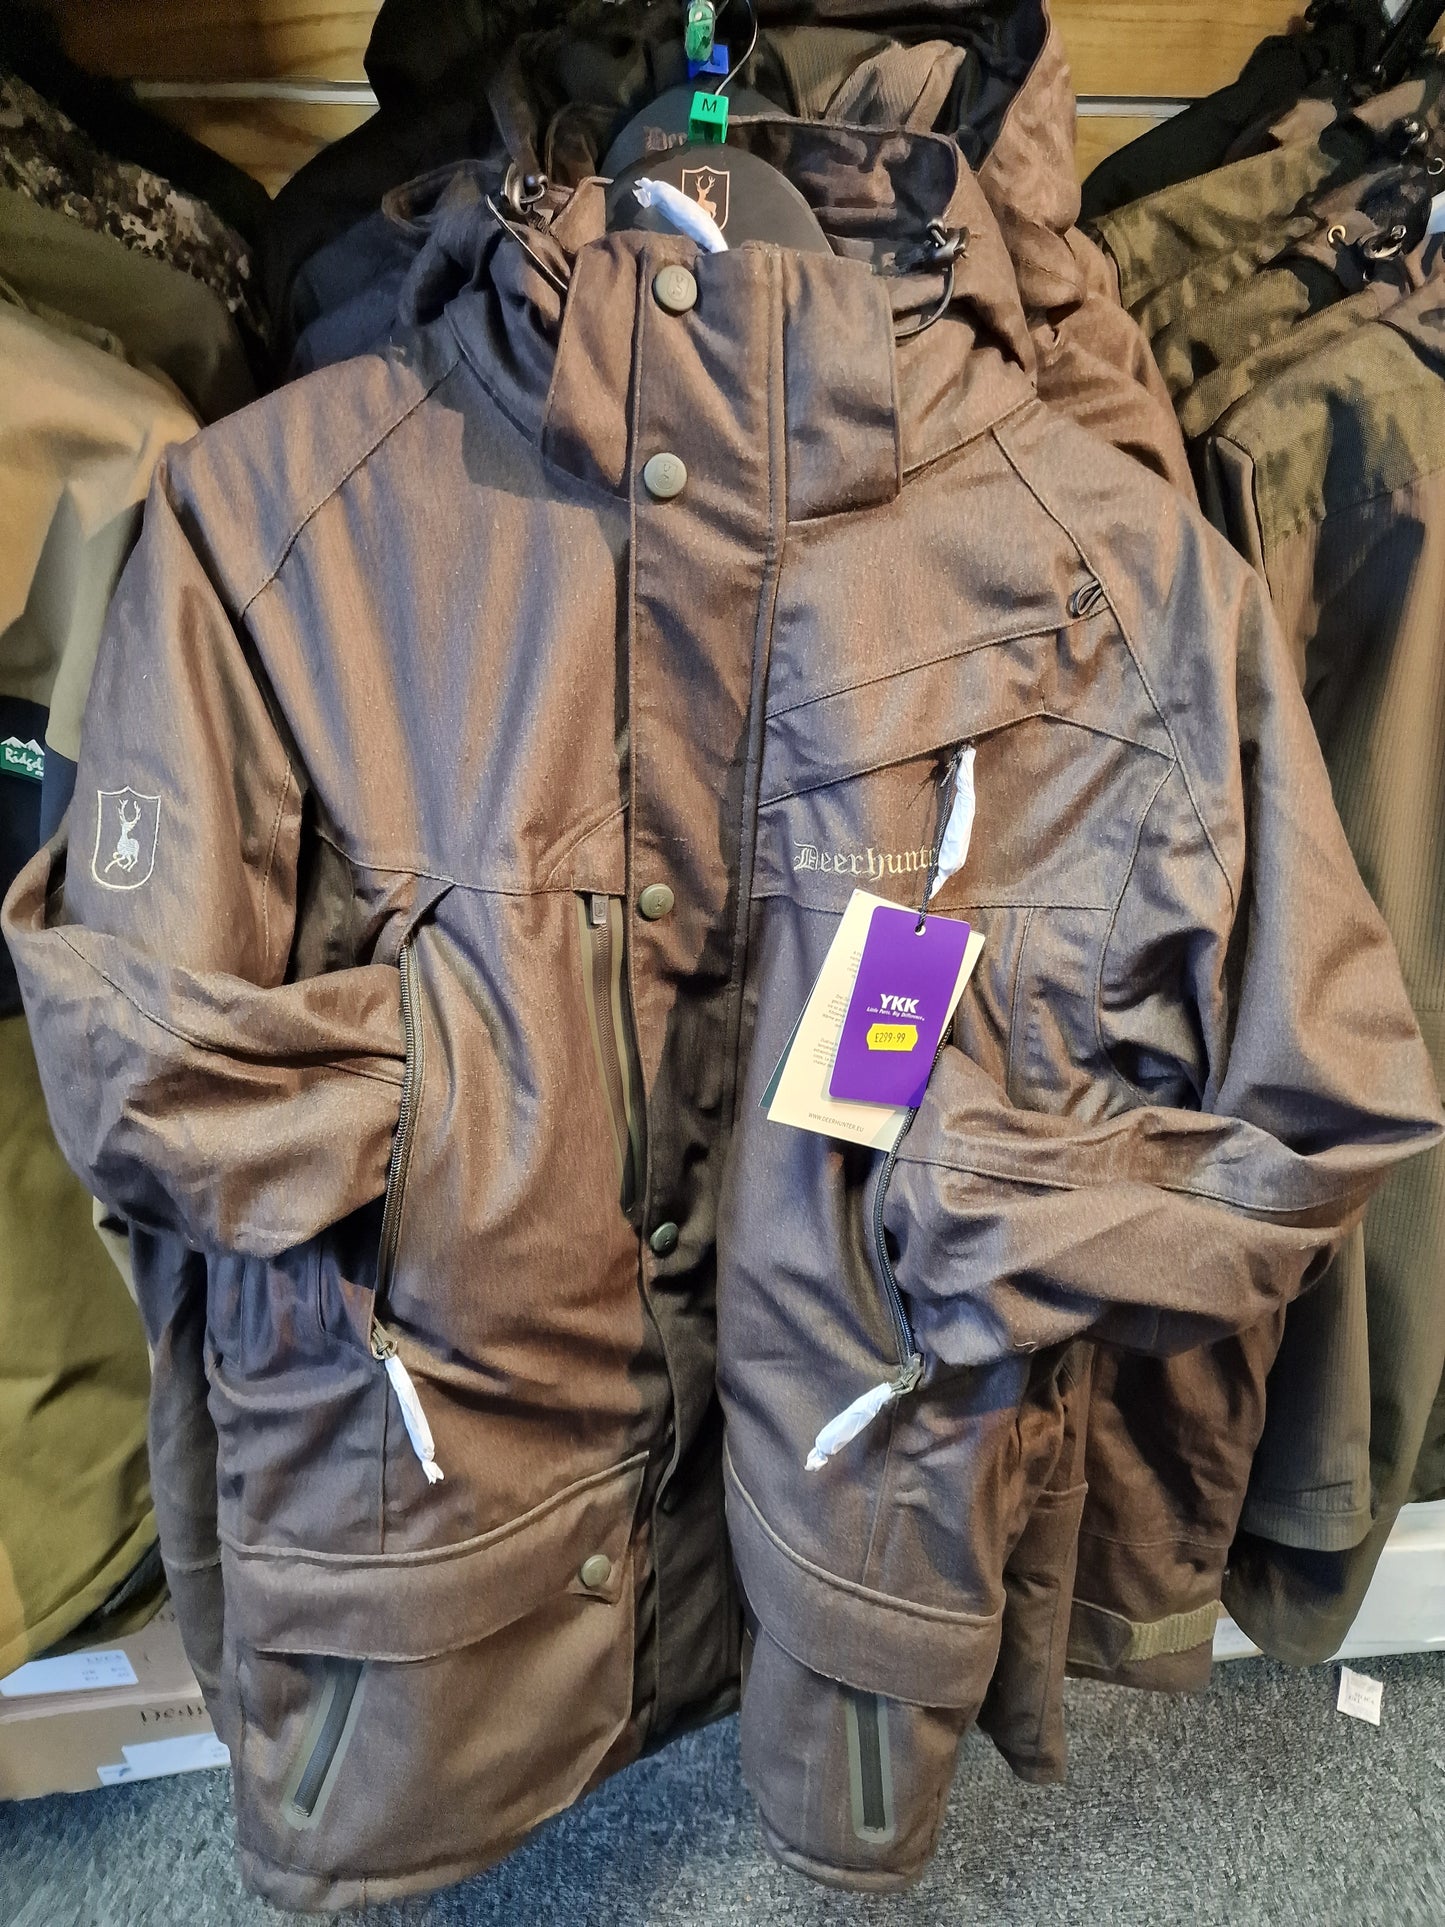 Deerhunter Ram Winter Coat Waterproof and windproof Jacket